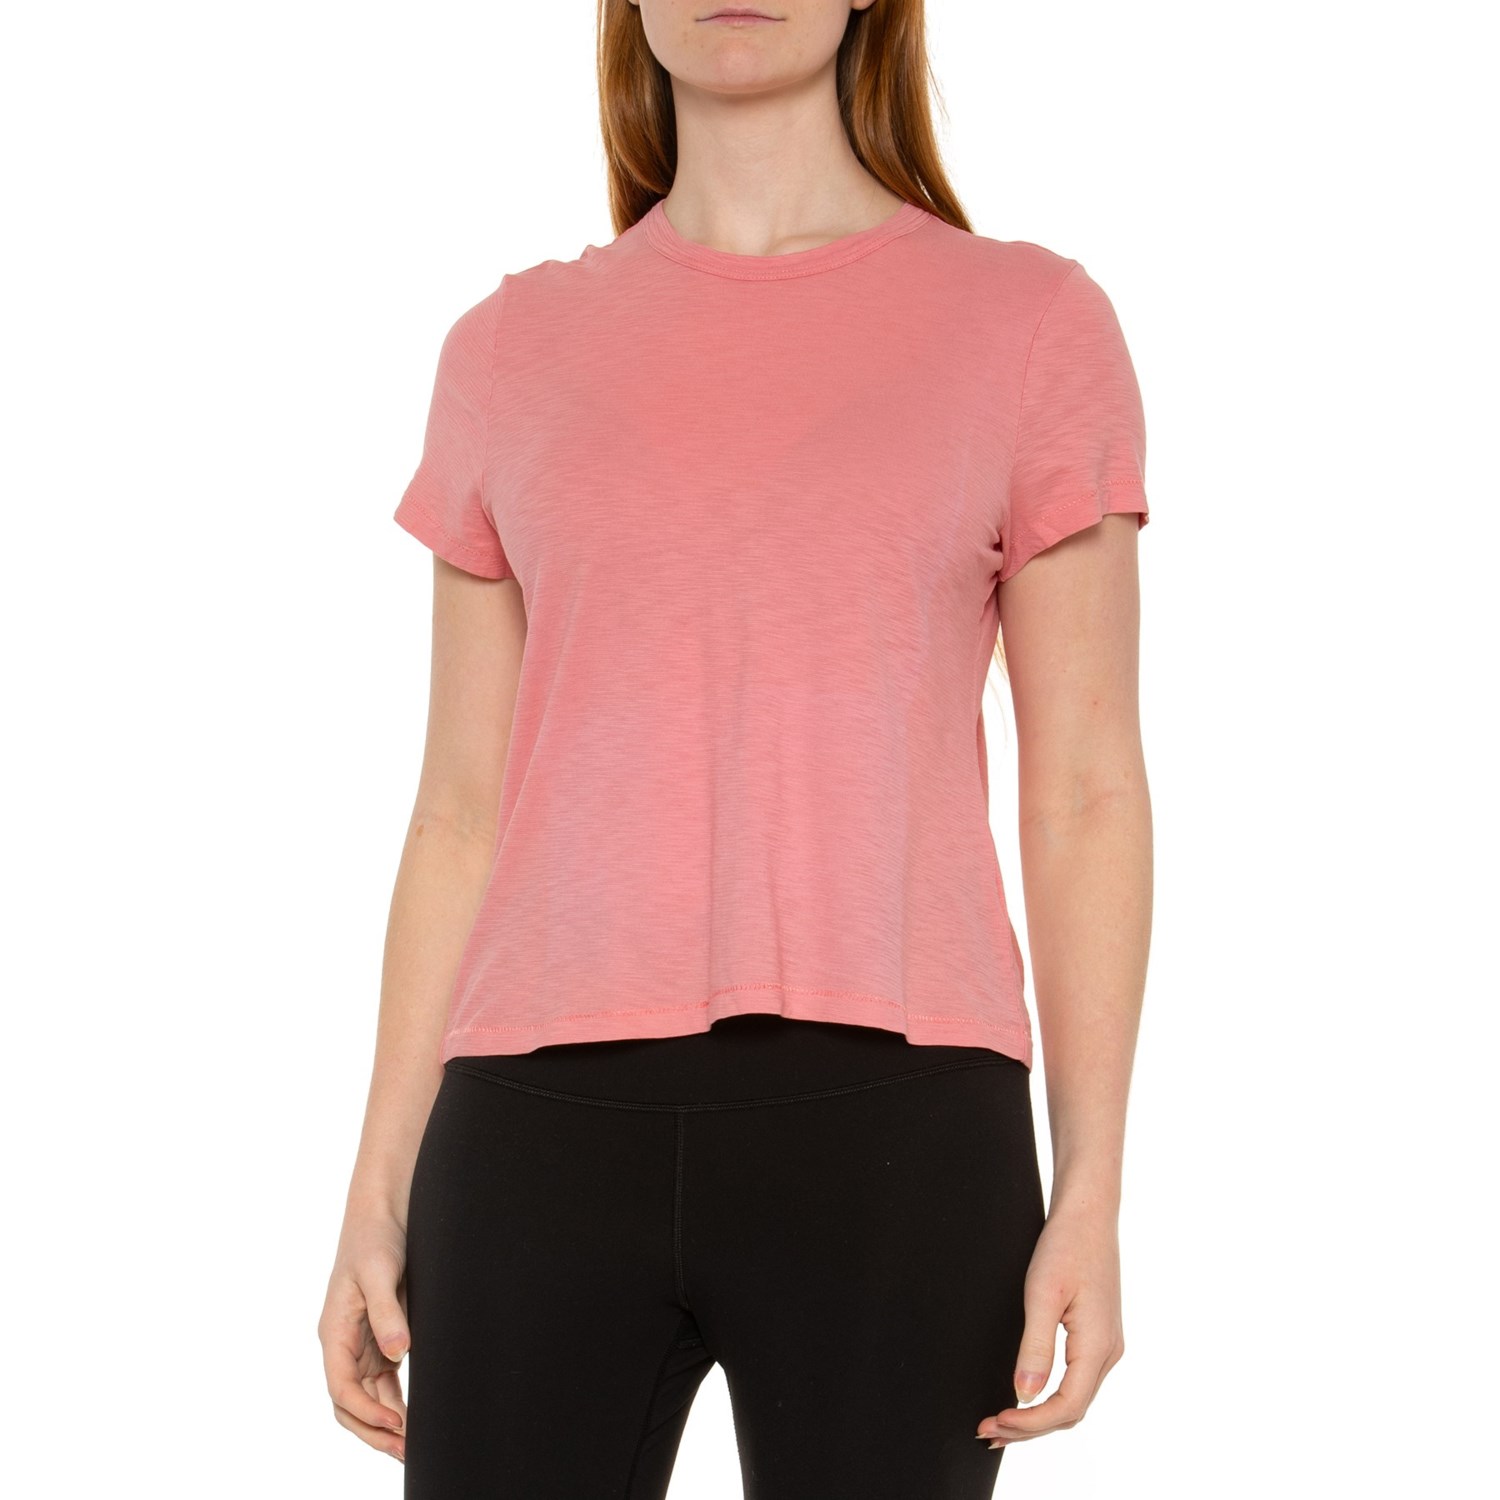 () s[^[ ~[ W[j[} re[W EHbV T-Vc - V[g X[u Peter Millar Journeyman Vintage Wash T-Shirt - Short Sleeve Vintage Pink